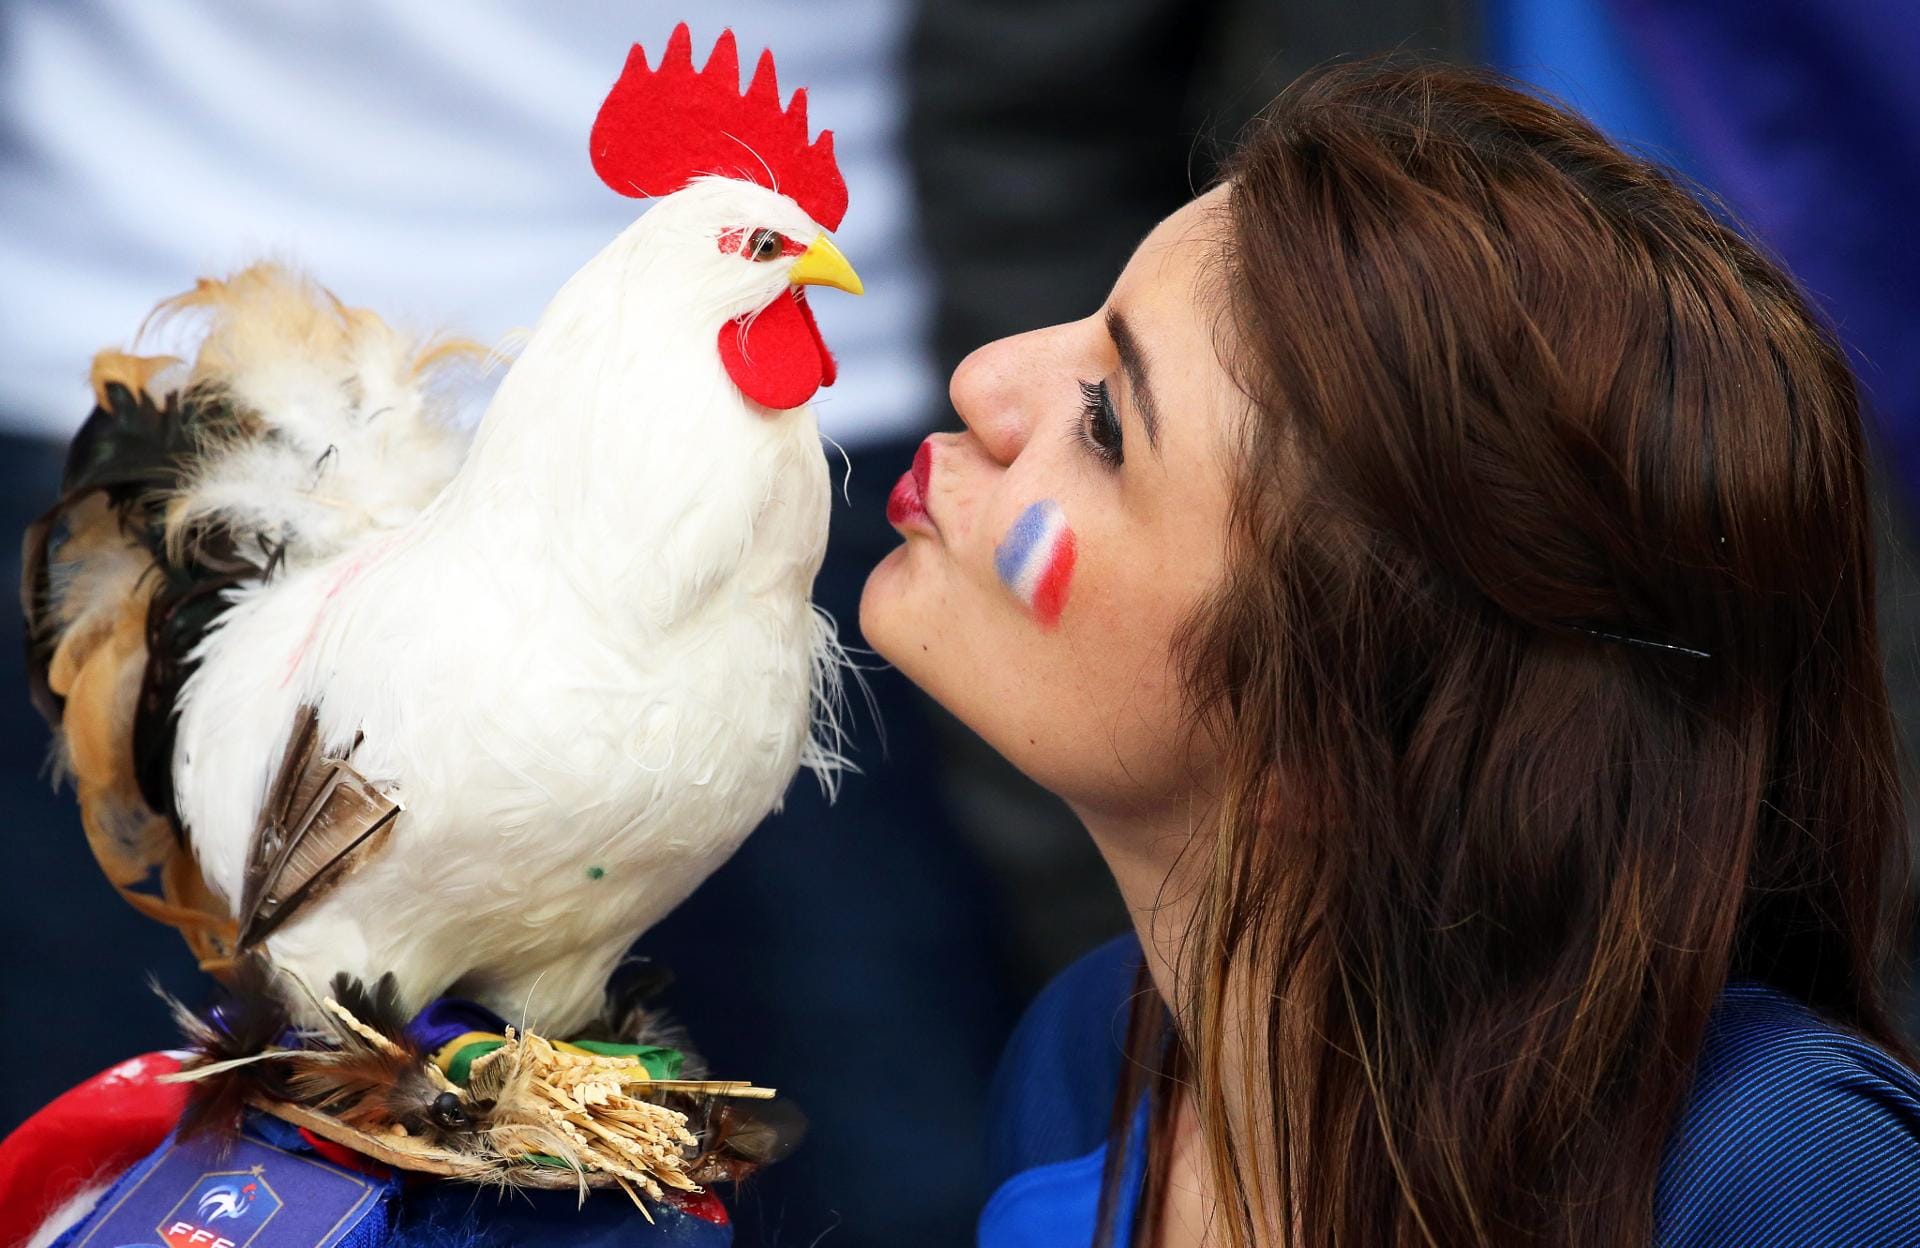 Der gallische Hahn als Symbol Frankreichs darf da natürlich nicht fehlen. Ein Küsschen für den Gockel soll Glück bringen.